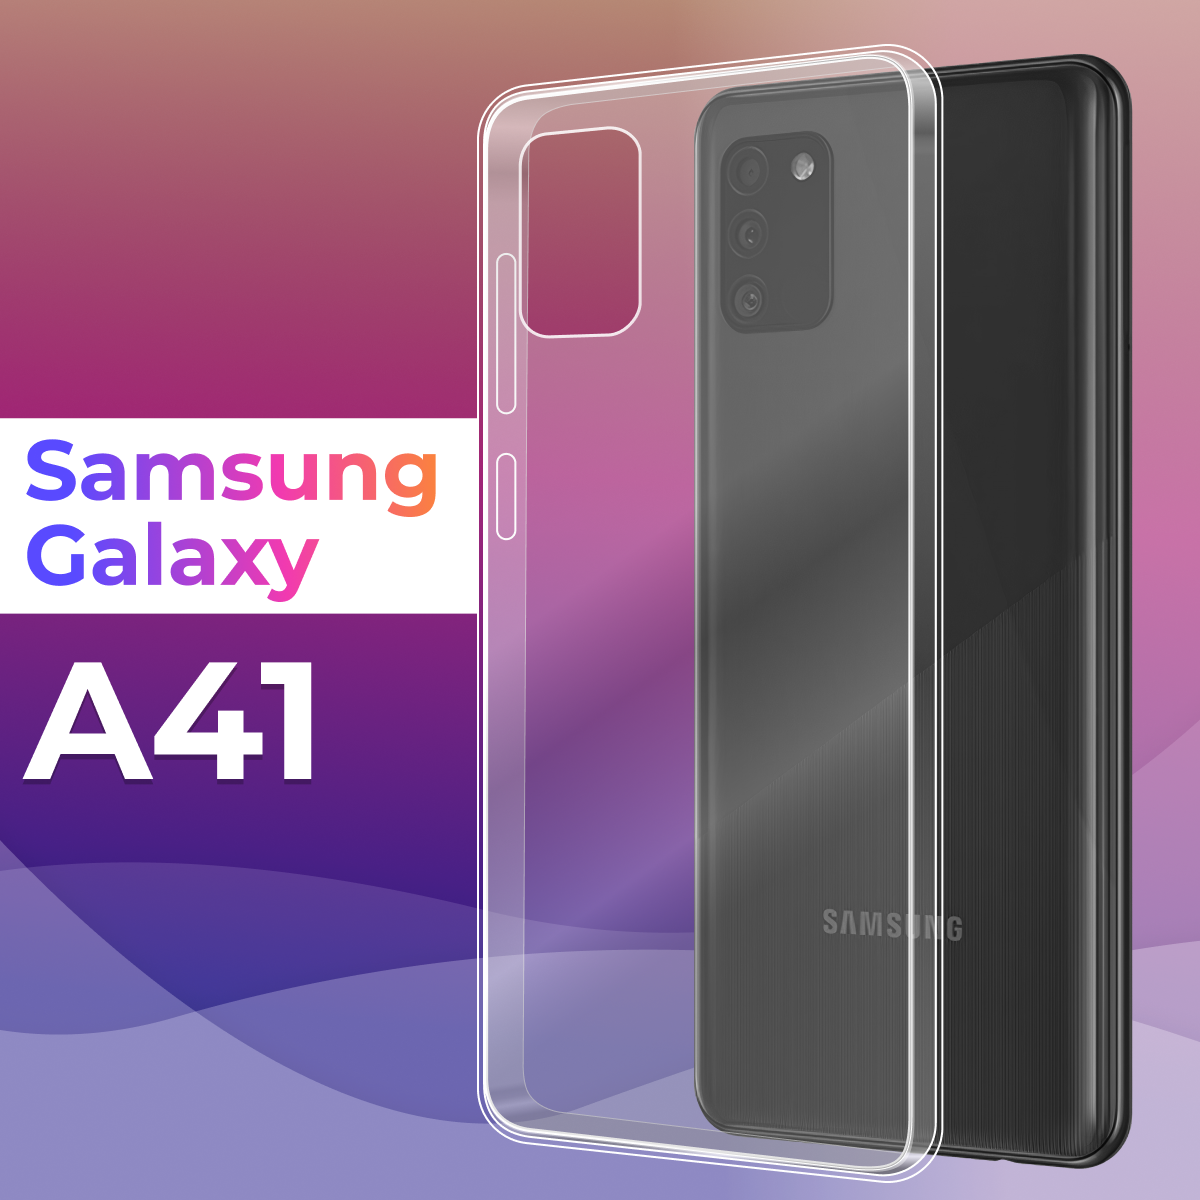 Тонкий силиконовый чехол для смартфона Samsung Galaxy A41 / Противоударный защитный чехол на телефон Самсунг Галакси А41 (Прозрачный)